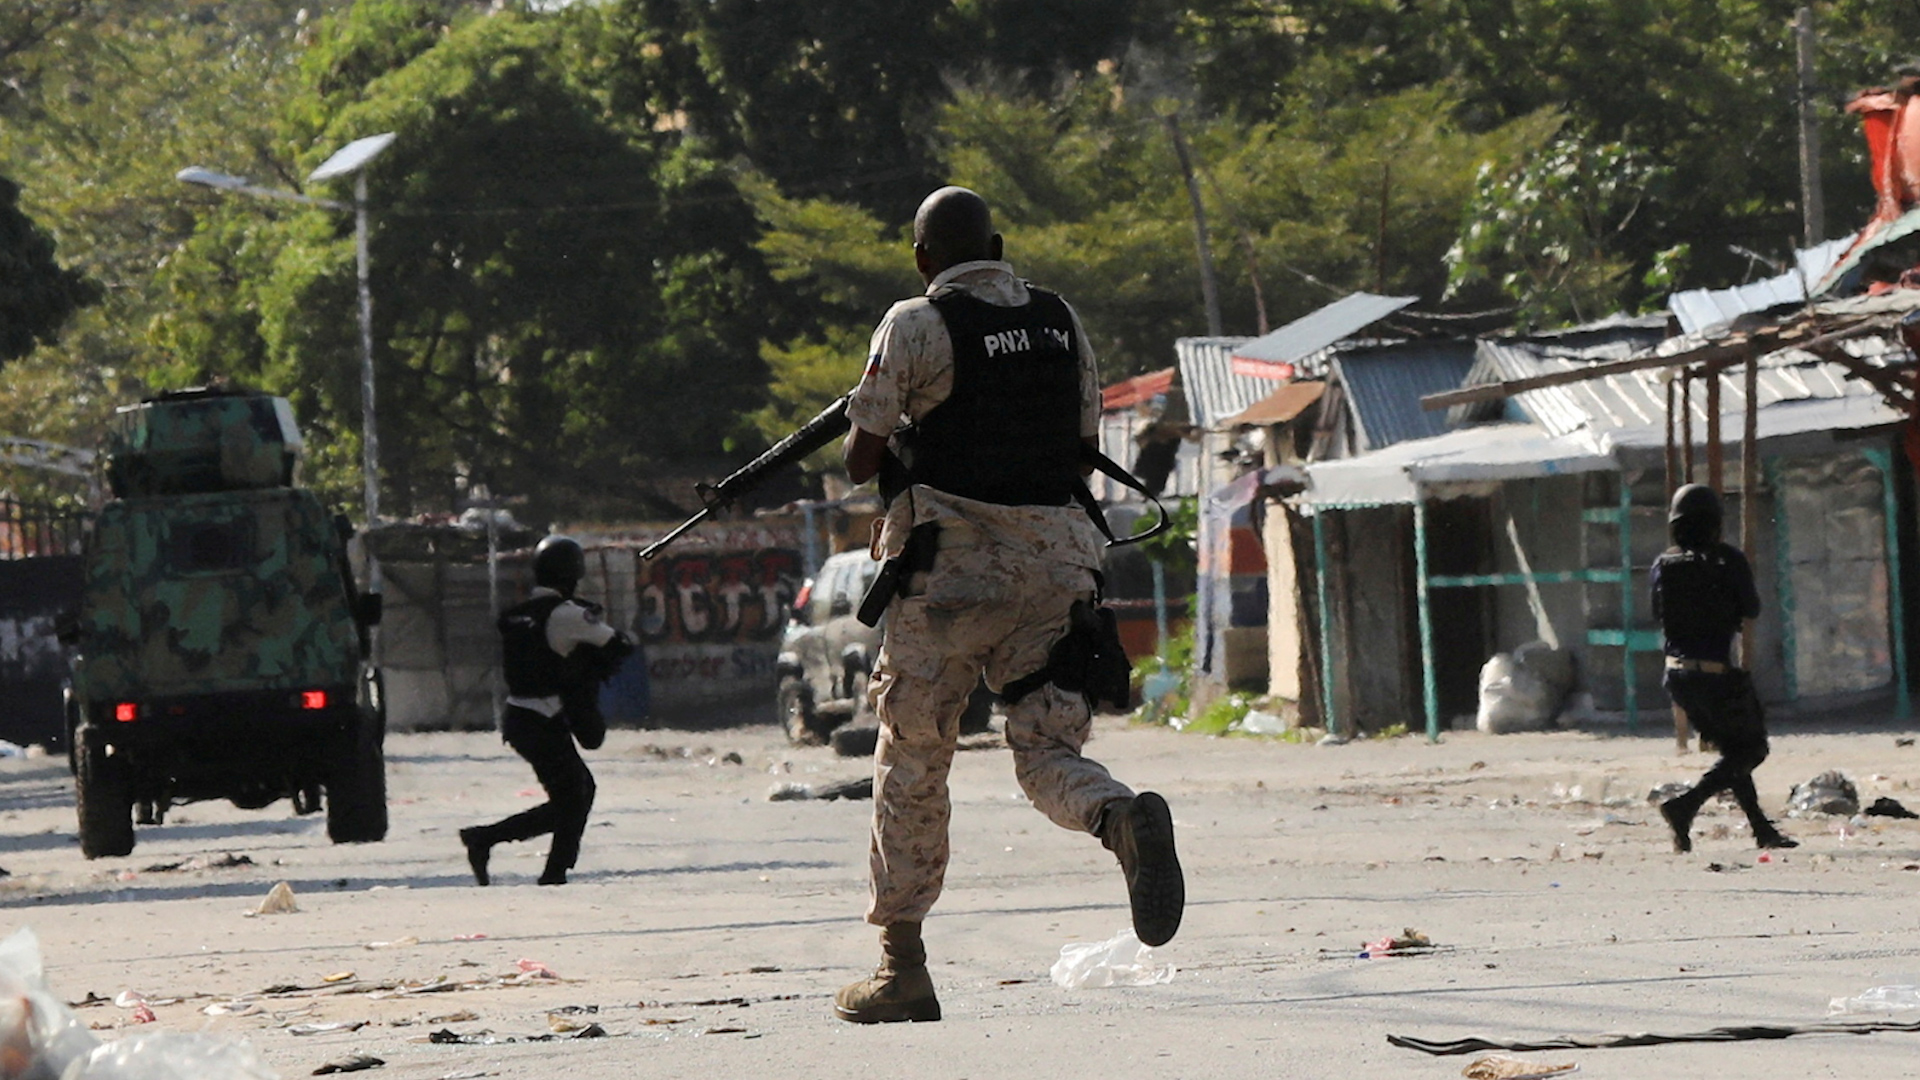 Trùm tội phạm muốn chiếm chính quyền, Haiti ban bố tình trạng khẩn cấp- Ảnh 1.